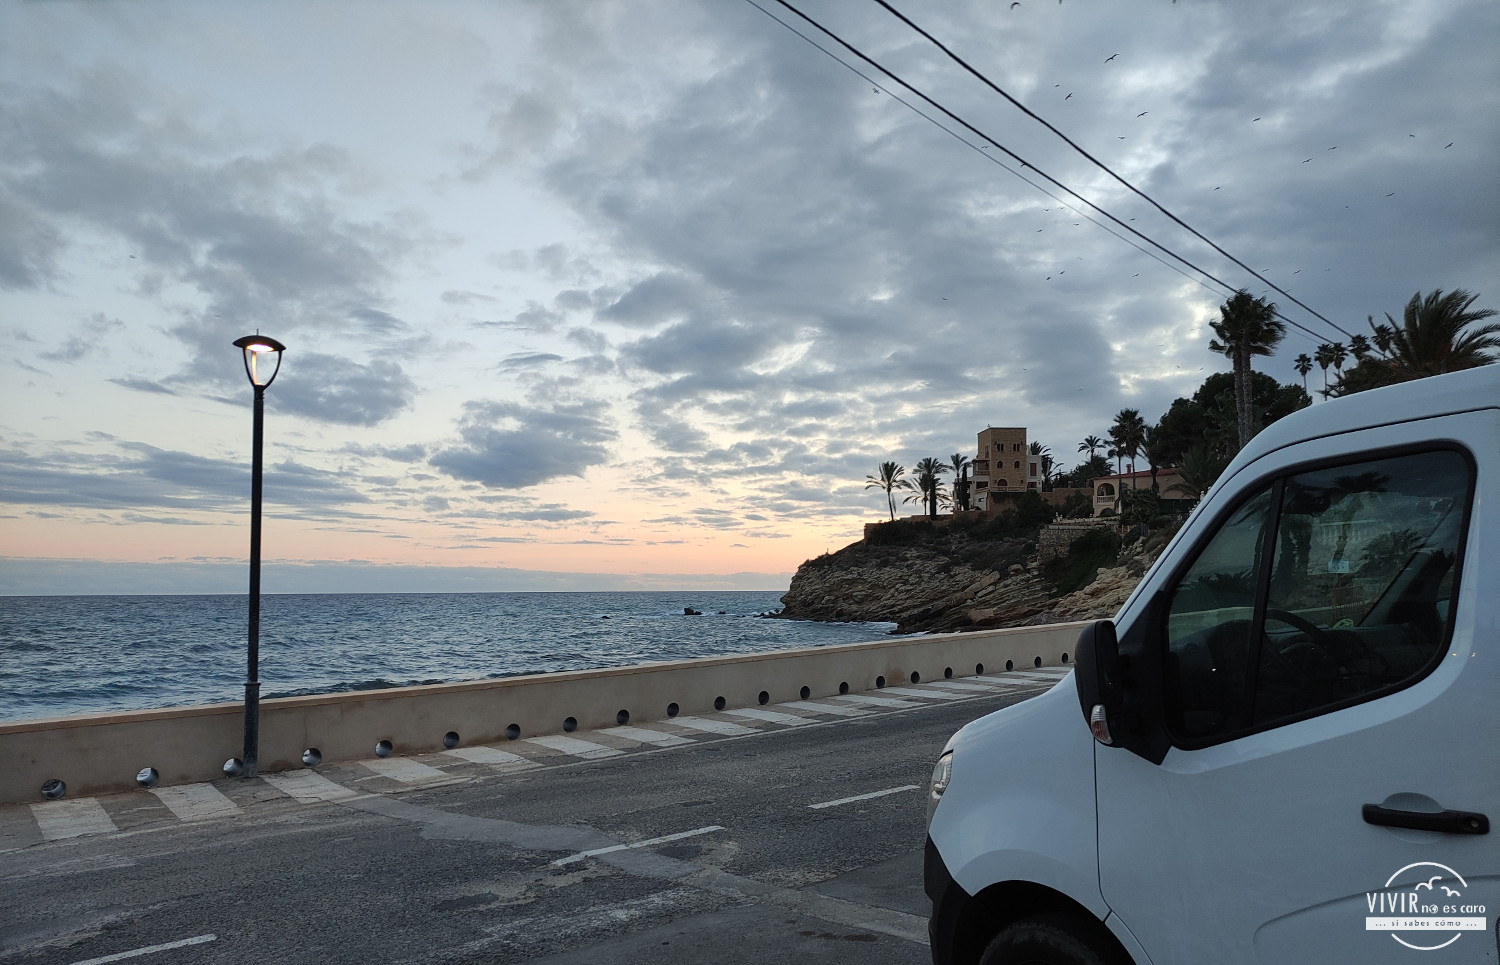 Pernoctando con vistas al mar en furgoneta camper (Alicante)